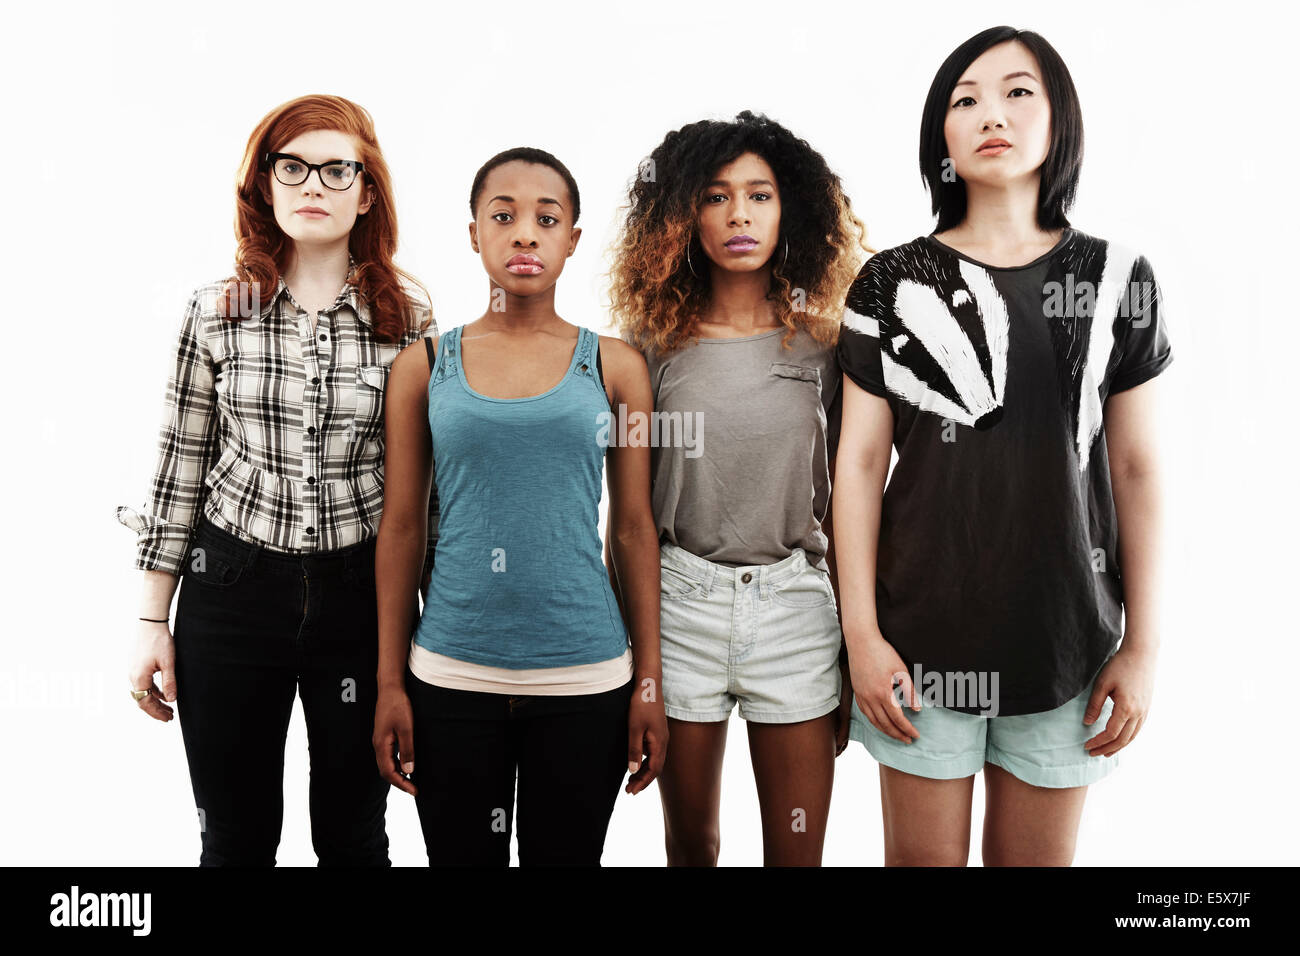 Formale Studioportrait von vier schweren jungen Frauen Stockfoto